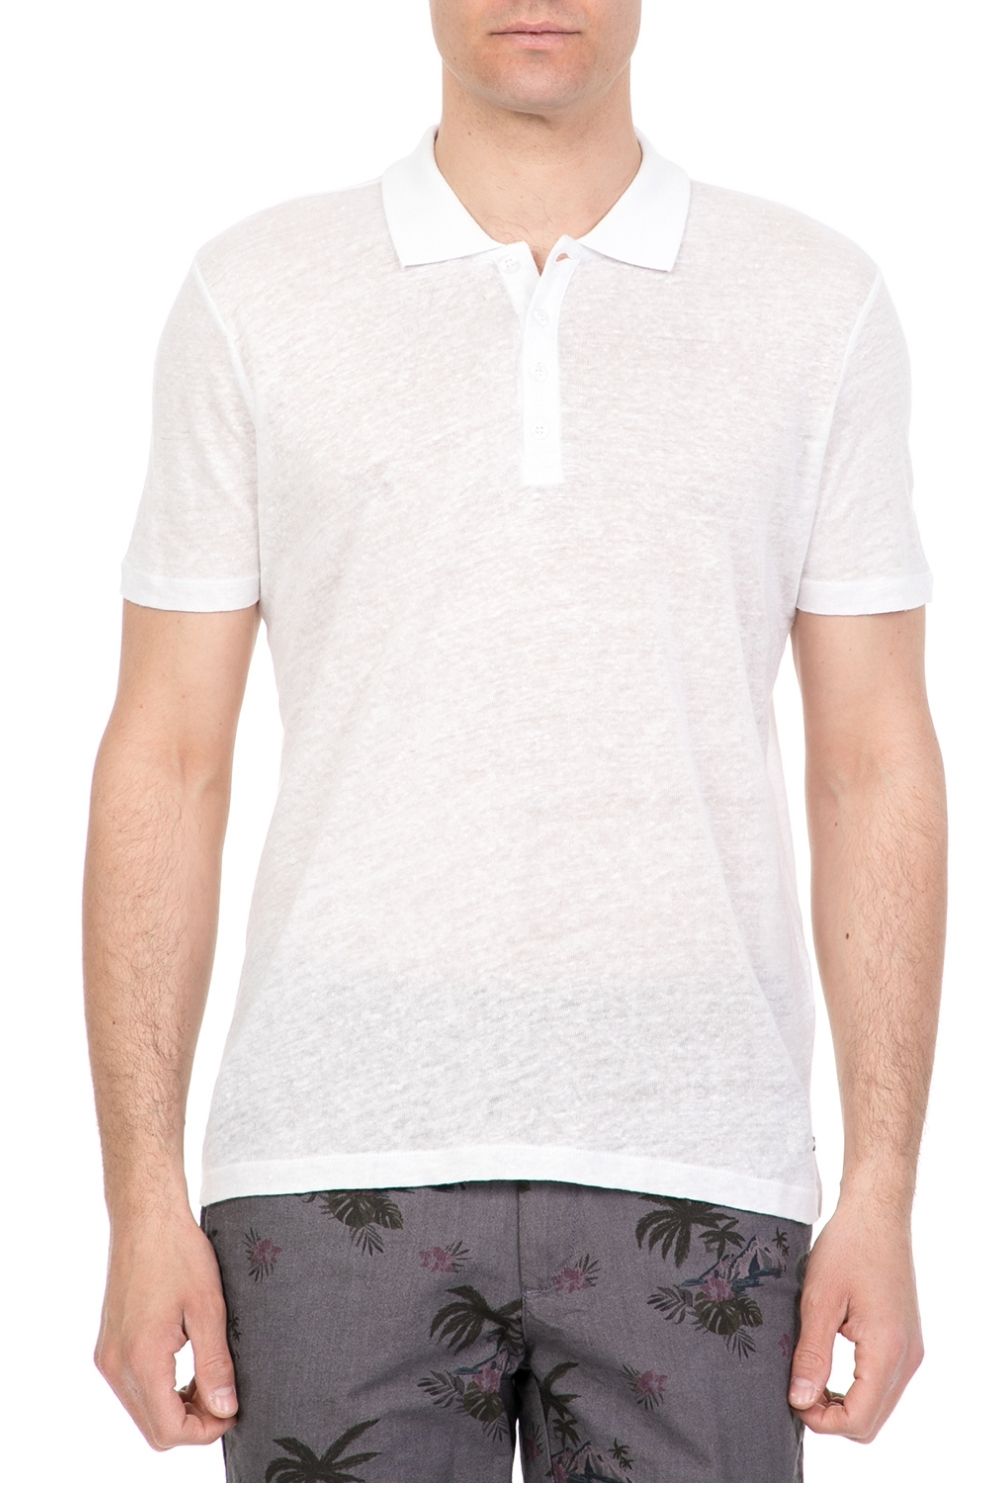 Ανδρικά/Ρούχα/Μπλούζες/Πόλο SSEINSE - Ανδρική polo μπλούζα SSEINSE λευκή